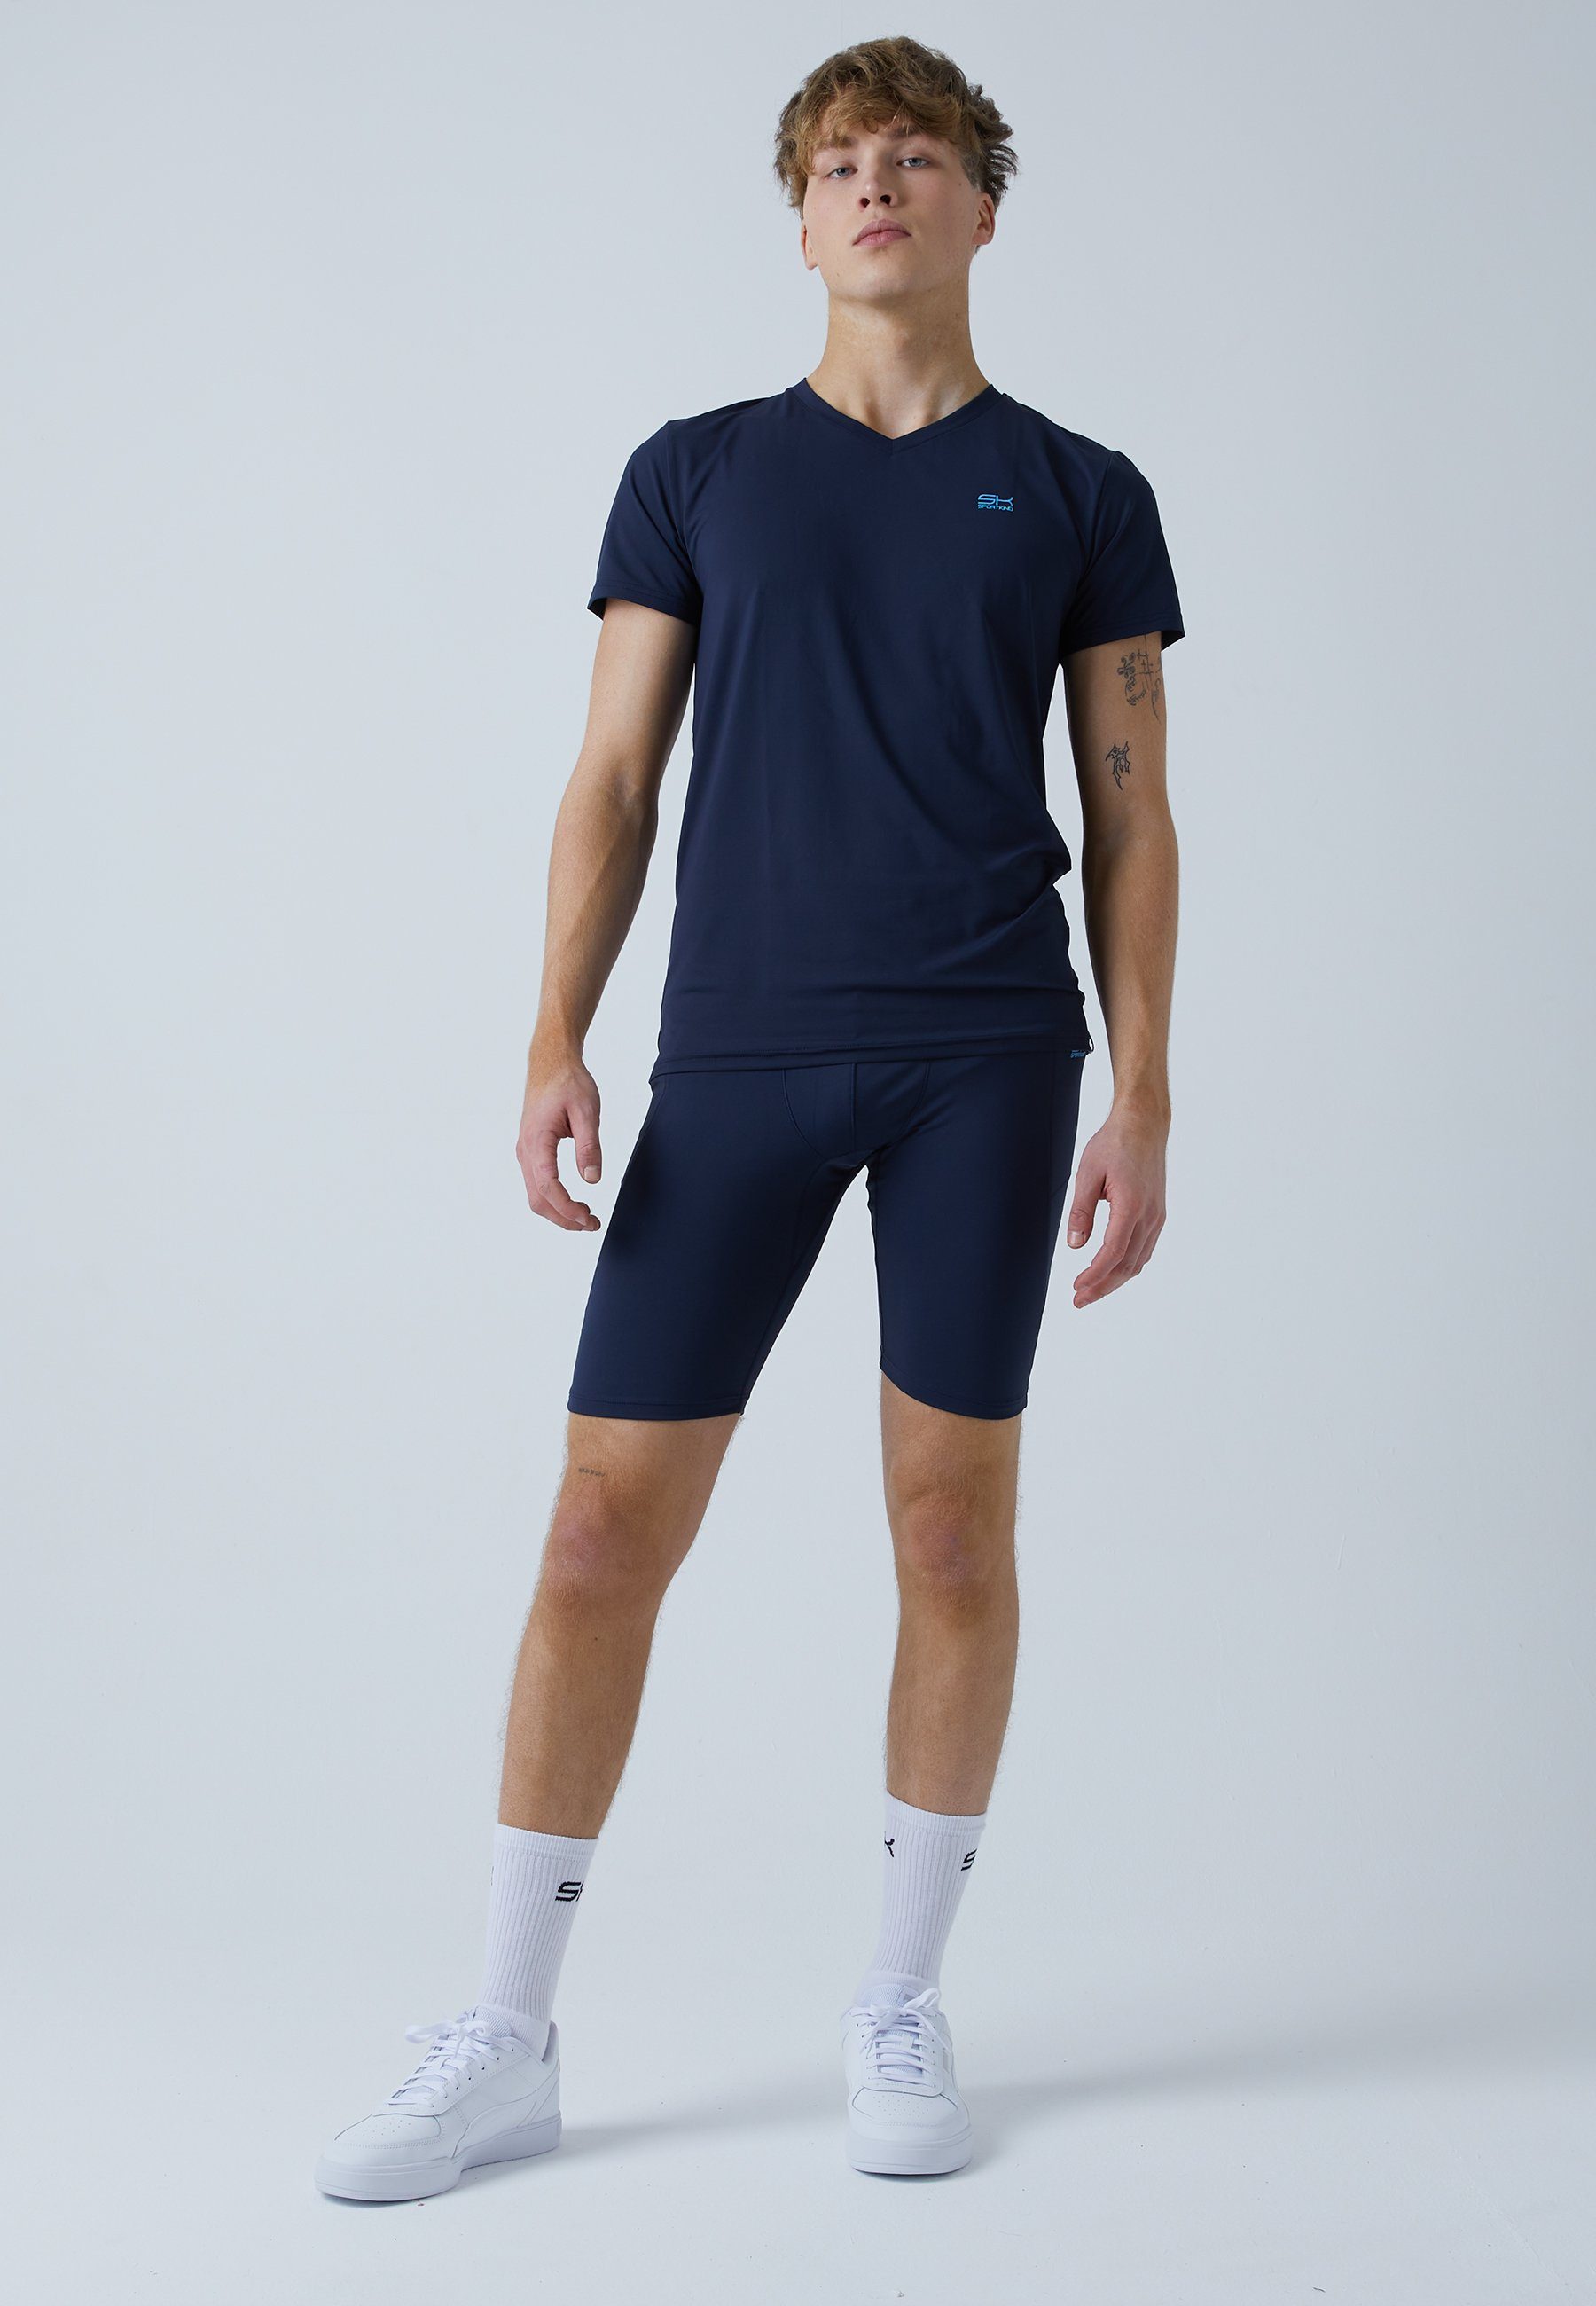 SPORTKIND Funktionsshorts Tennis Short Radlerhose Herren Taschen navy mit Jungen blau & Tights